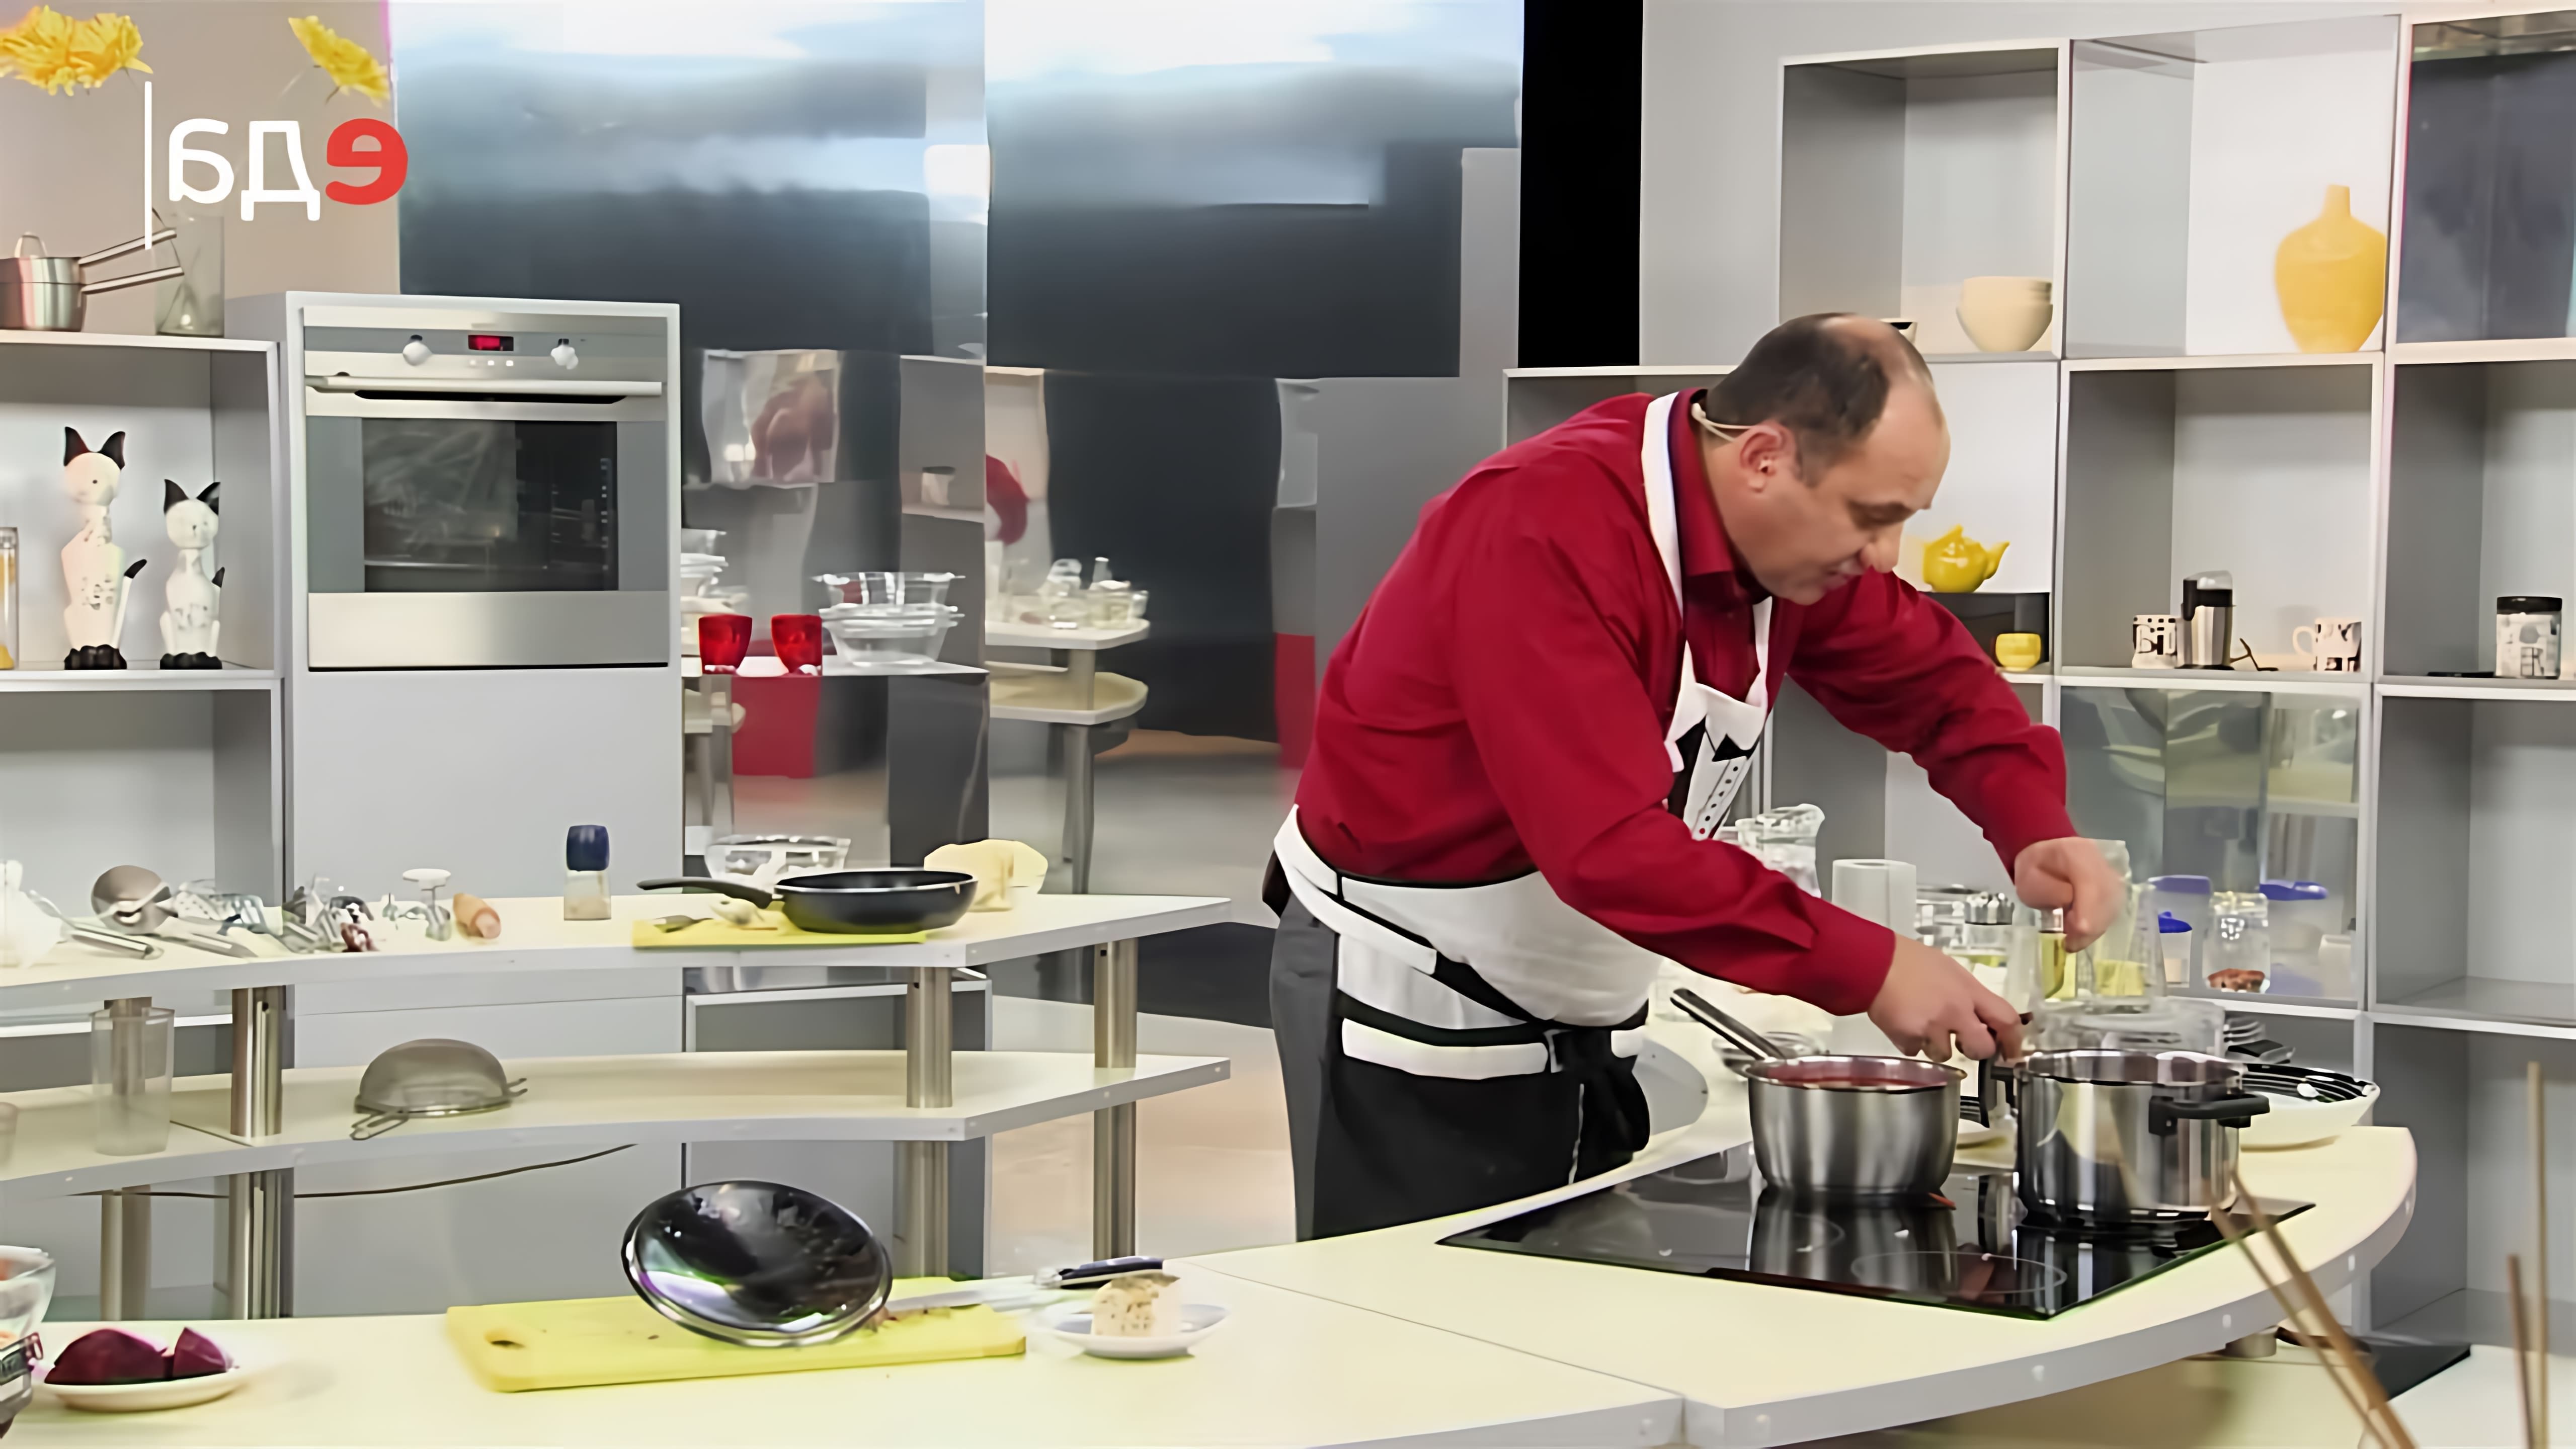 В данном видео-ролике телеканал "Еда" представляет серию рецептов приготовления борща - одного из самых популярных первых блюд в России